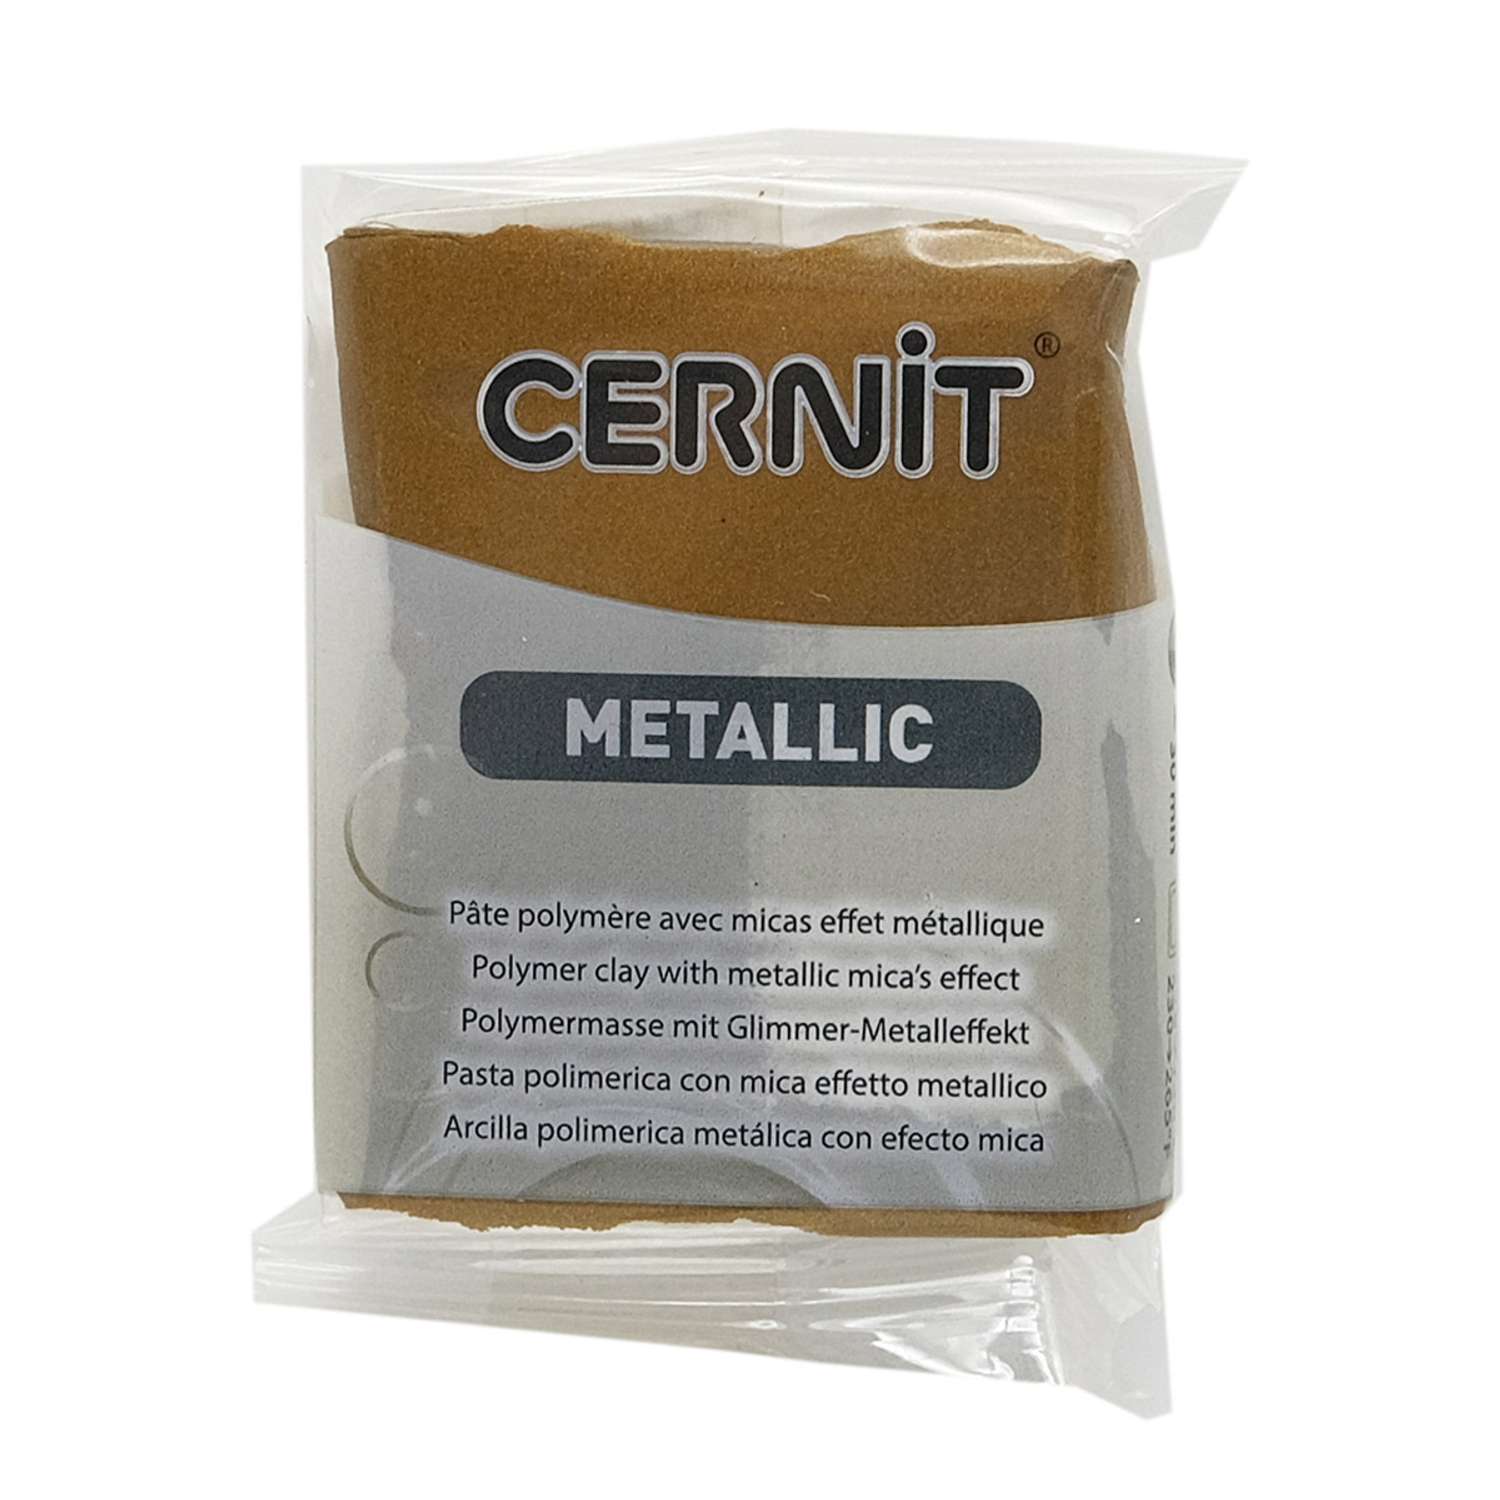 Полимерная глина Cernit пластика запекаемая Цернит metallic 56 гр CE0870065 - фото 7